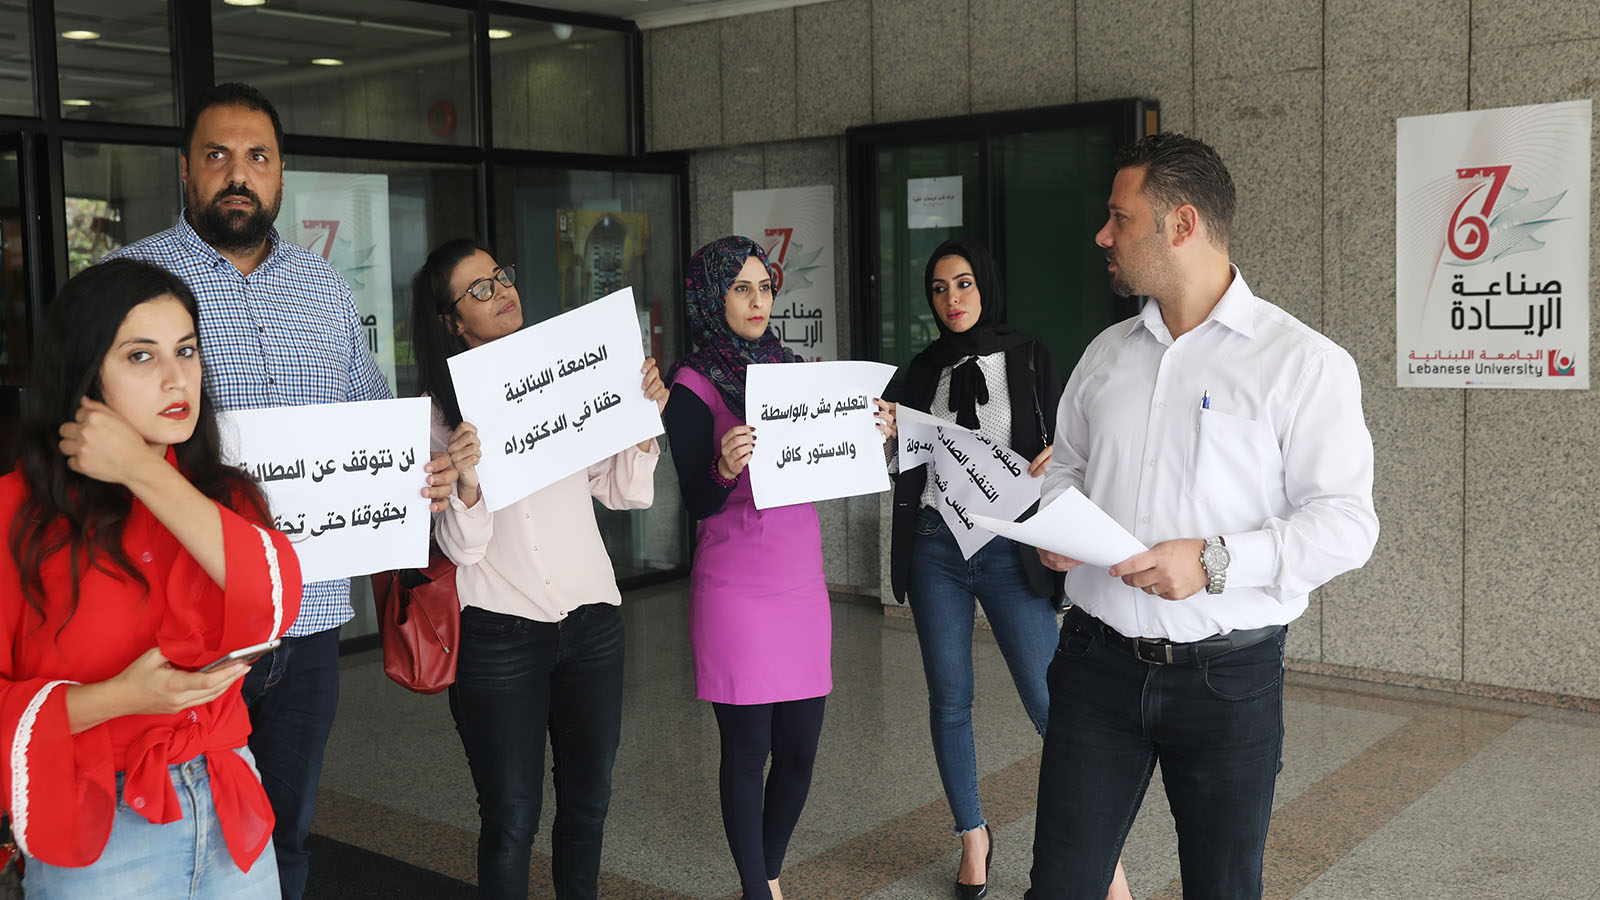 دكتوراه حقوق اللبنانية: منع تسجيل طلاب النظام القديم